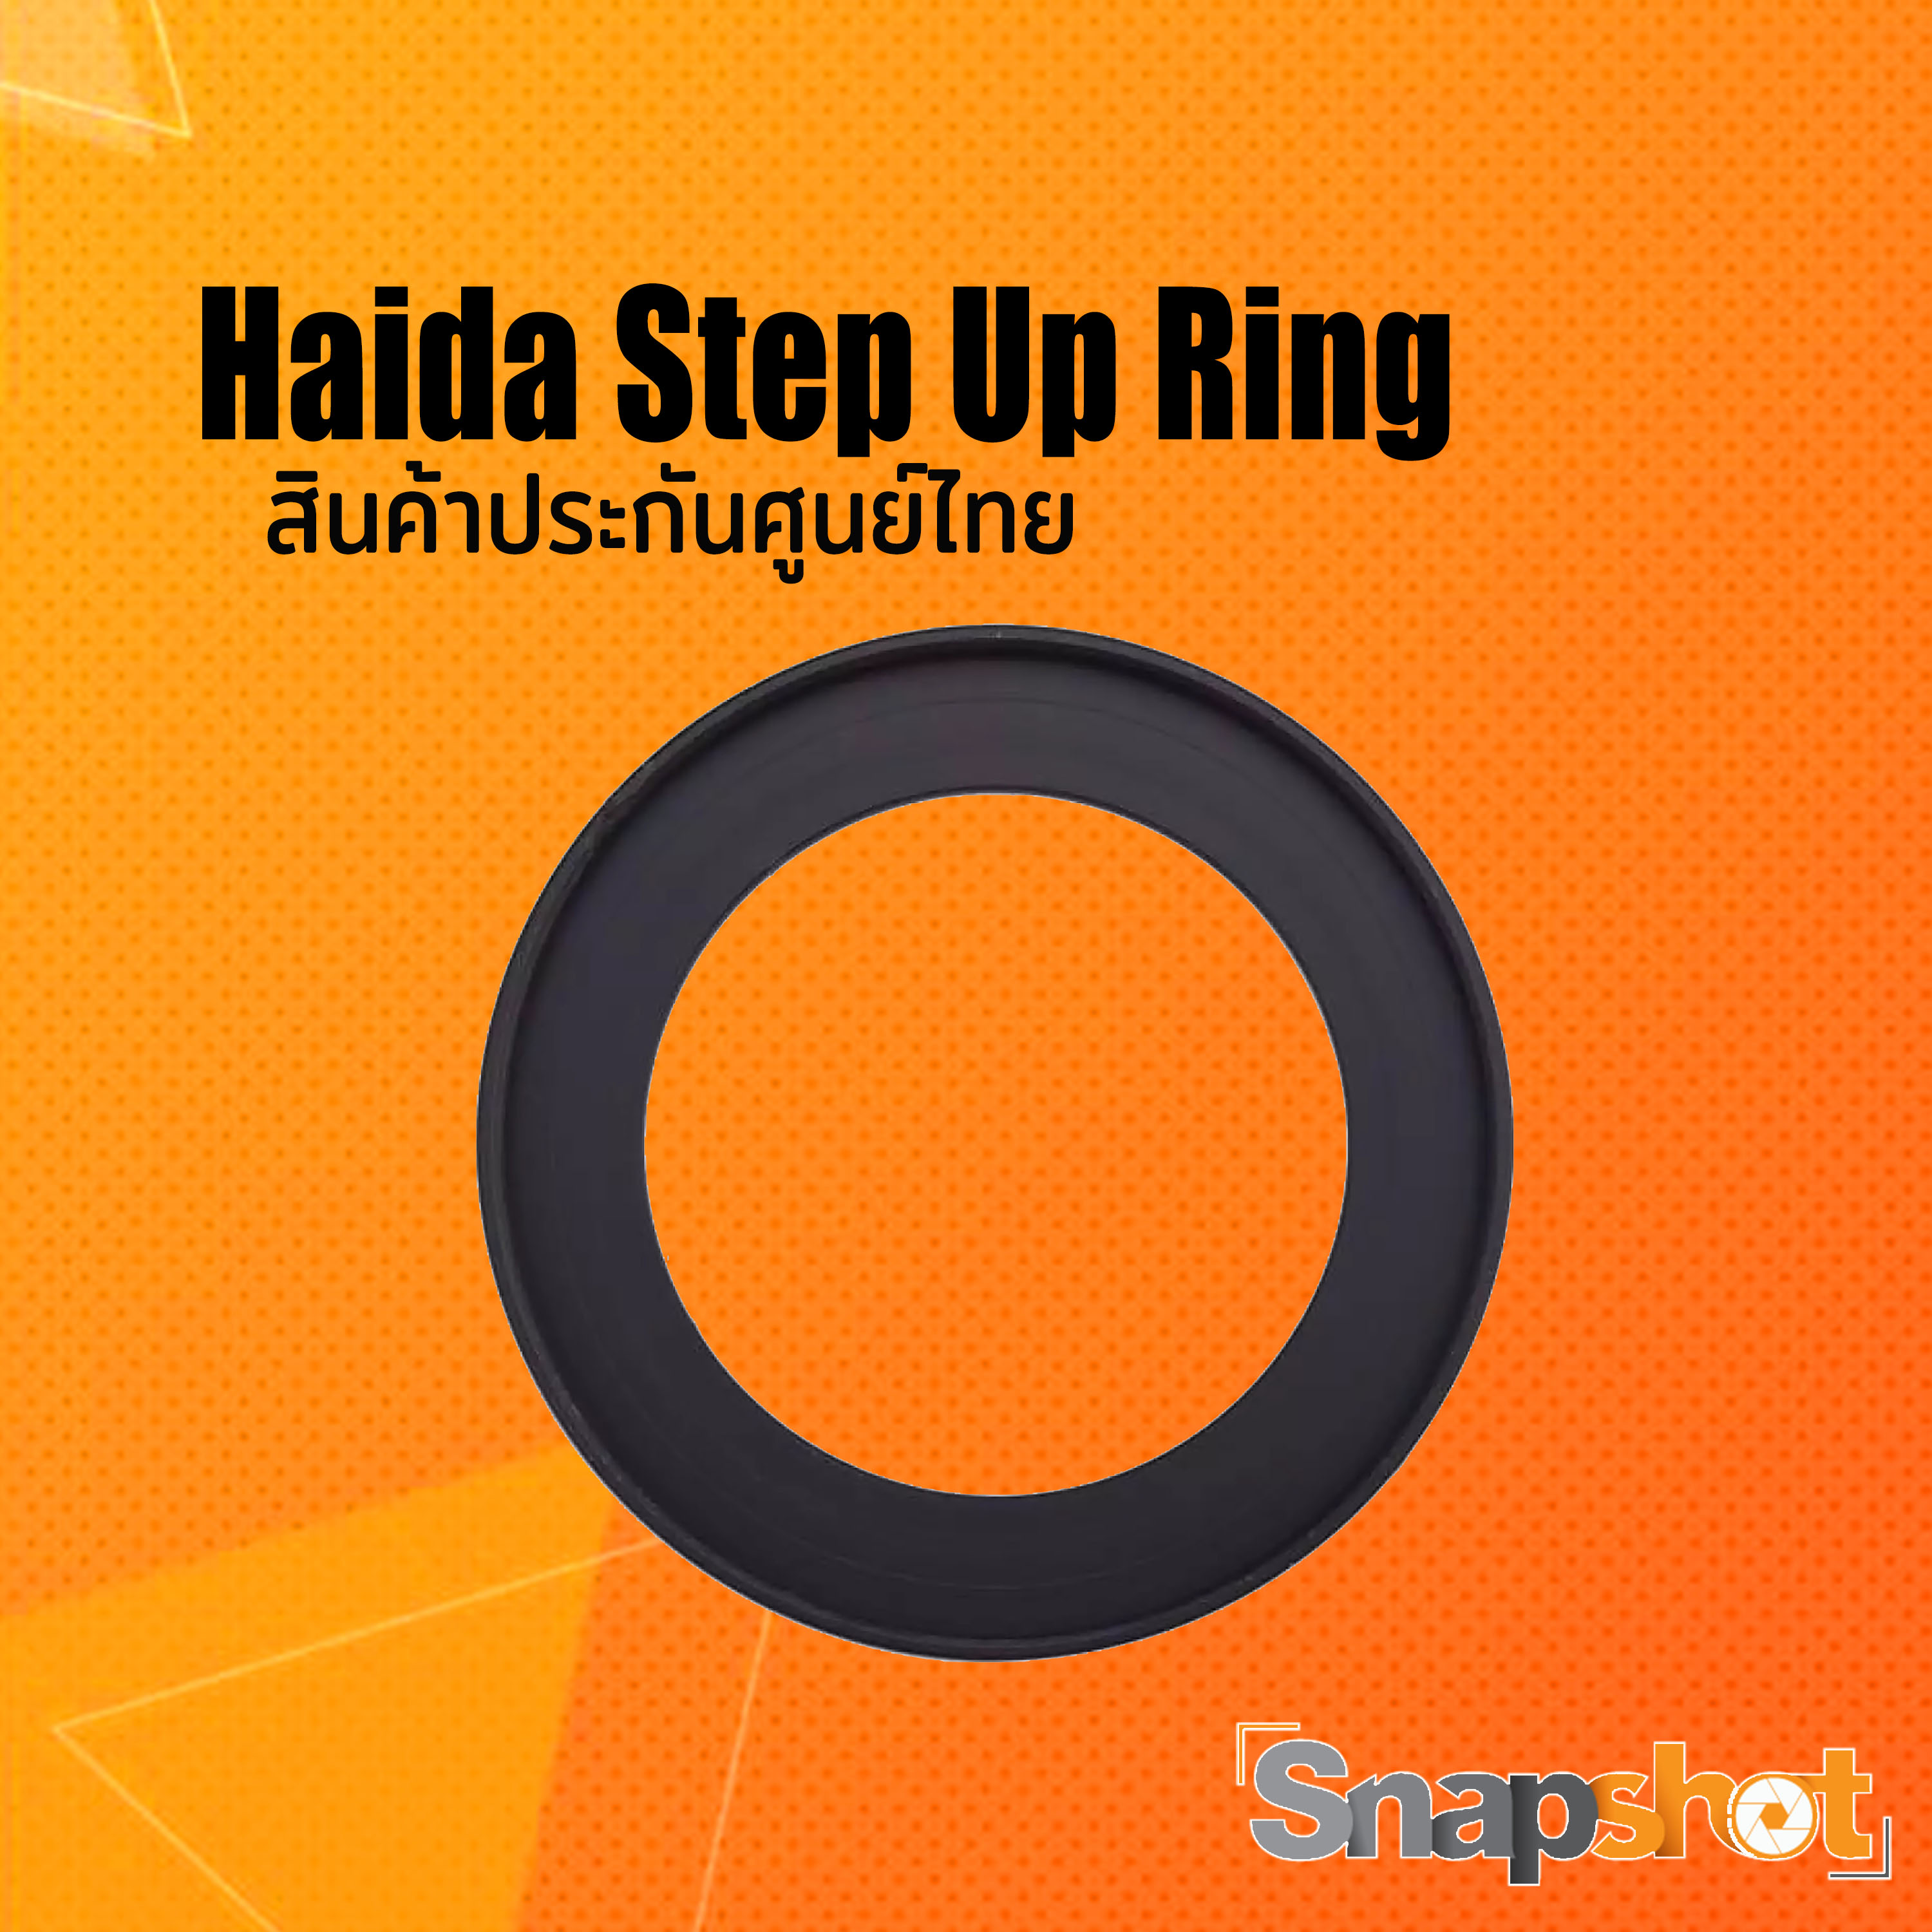 Haida Step Up Ring ขนาด snapshot snapshotshop